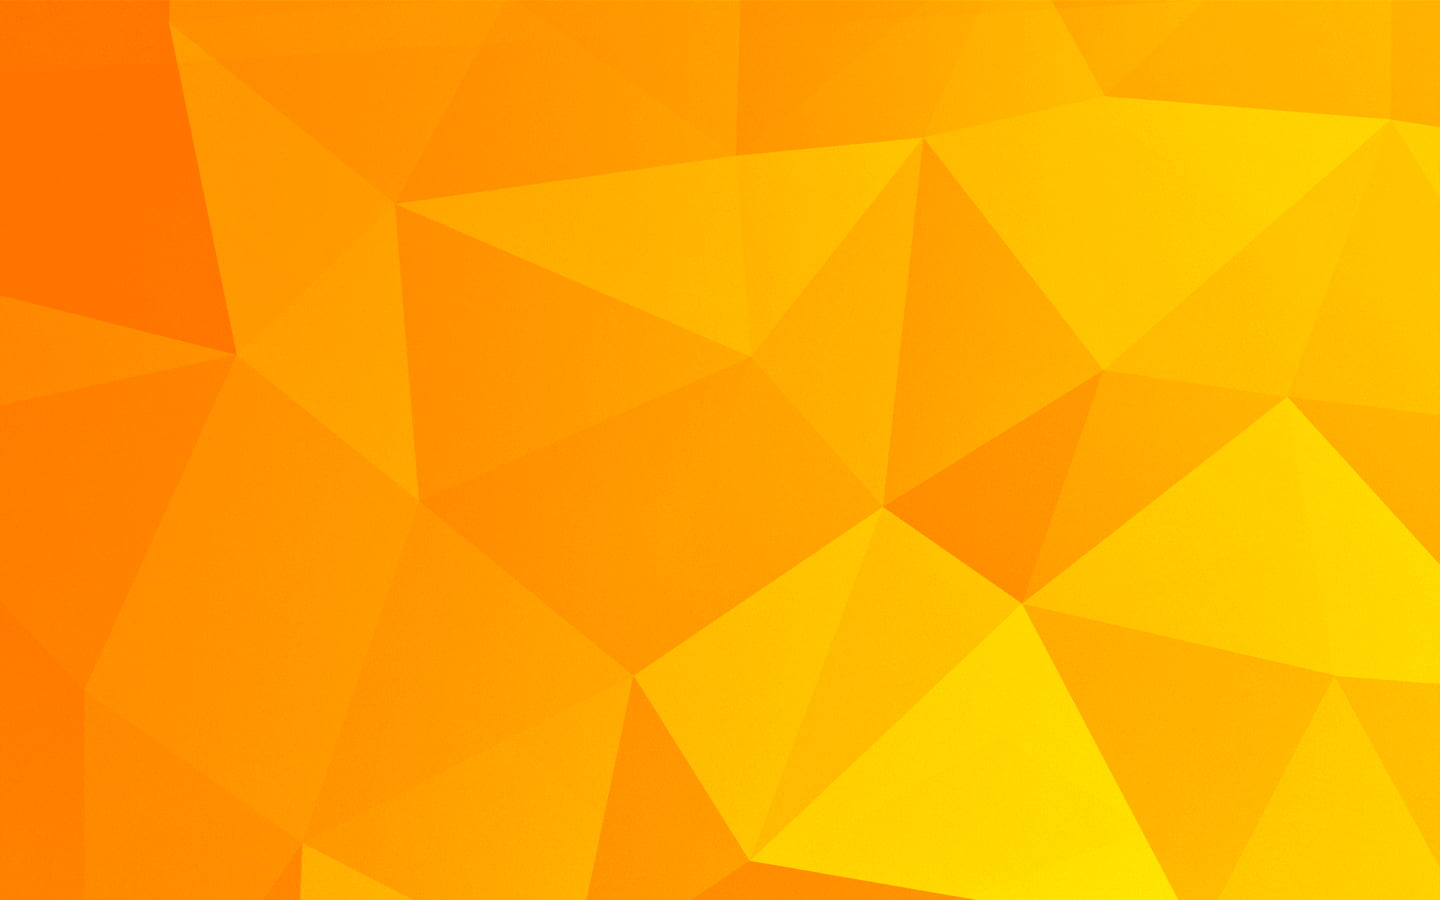 Hình nền HD với họa tiết low poly màu cam sẽ cho bạn không gian trang trí màn hình độc đáo và sôi động. Với màu sắc tươi sáng, họa tiết low poly sẽ đem lại cảm giác trẻ trung cho bạn. Hãy đắm mình vào màn hình của mình và tận hưởng sự đẹp mắt mà hình nền này mang lại!